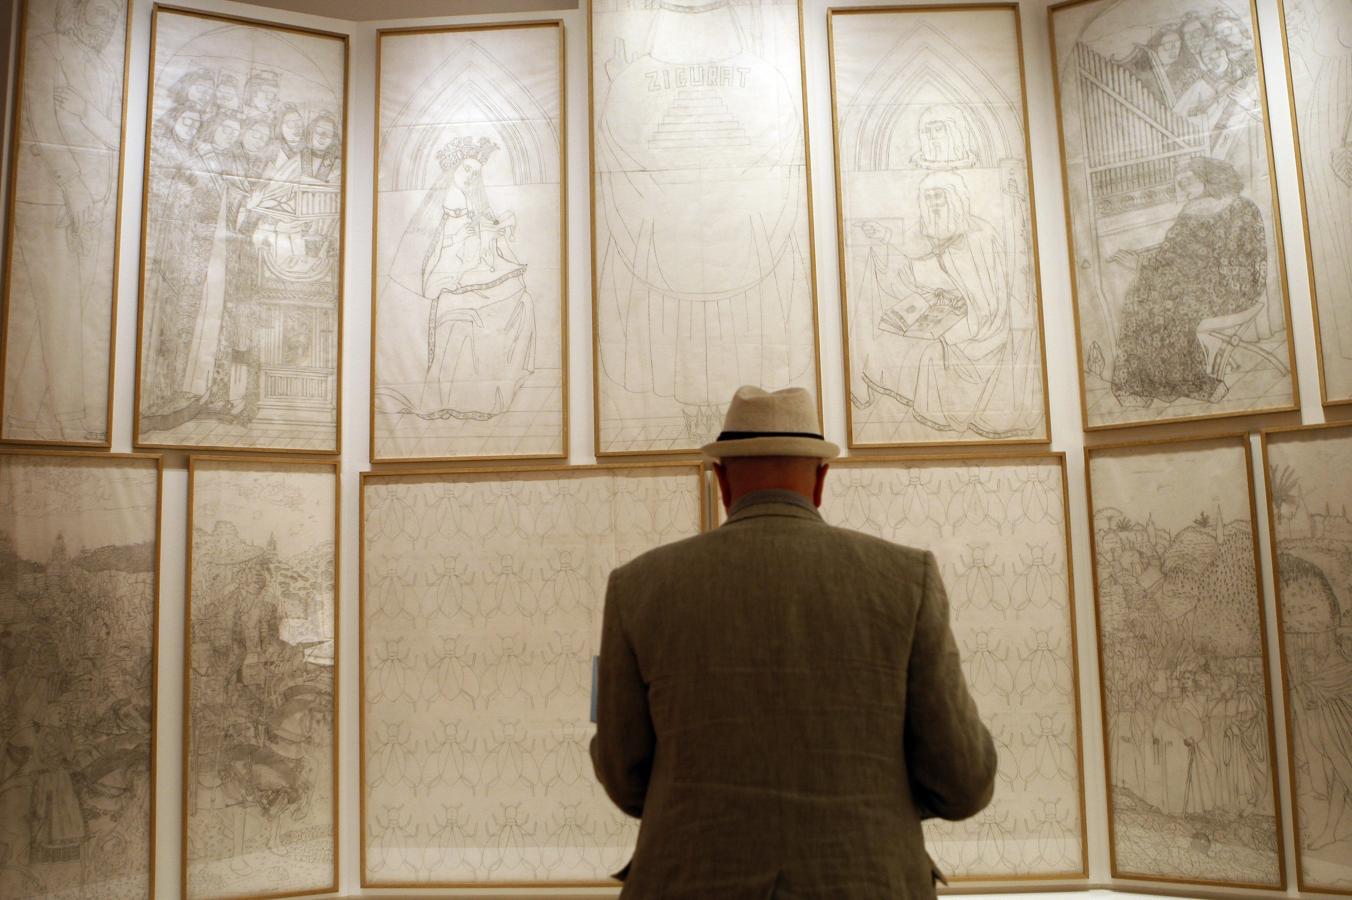 «El cordero místico». -En 2012, inauguraba una exposición en el Museo del Prado -uno de los pocos artistas vivos que lo conseguía-. Se trataba de una reinterpretación de «El cordero místico», de Jan van Eyck, encargo de Zugaza, entonces director de la pinacoteca.